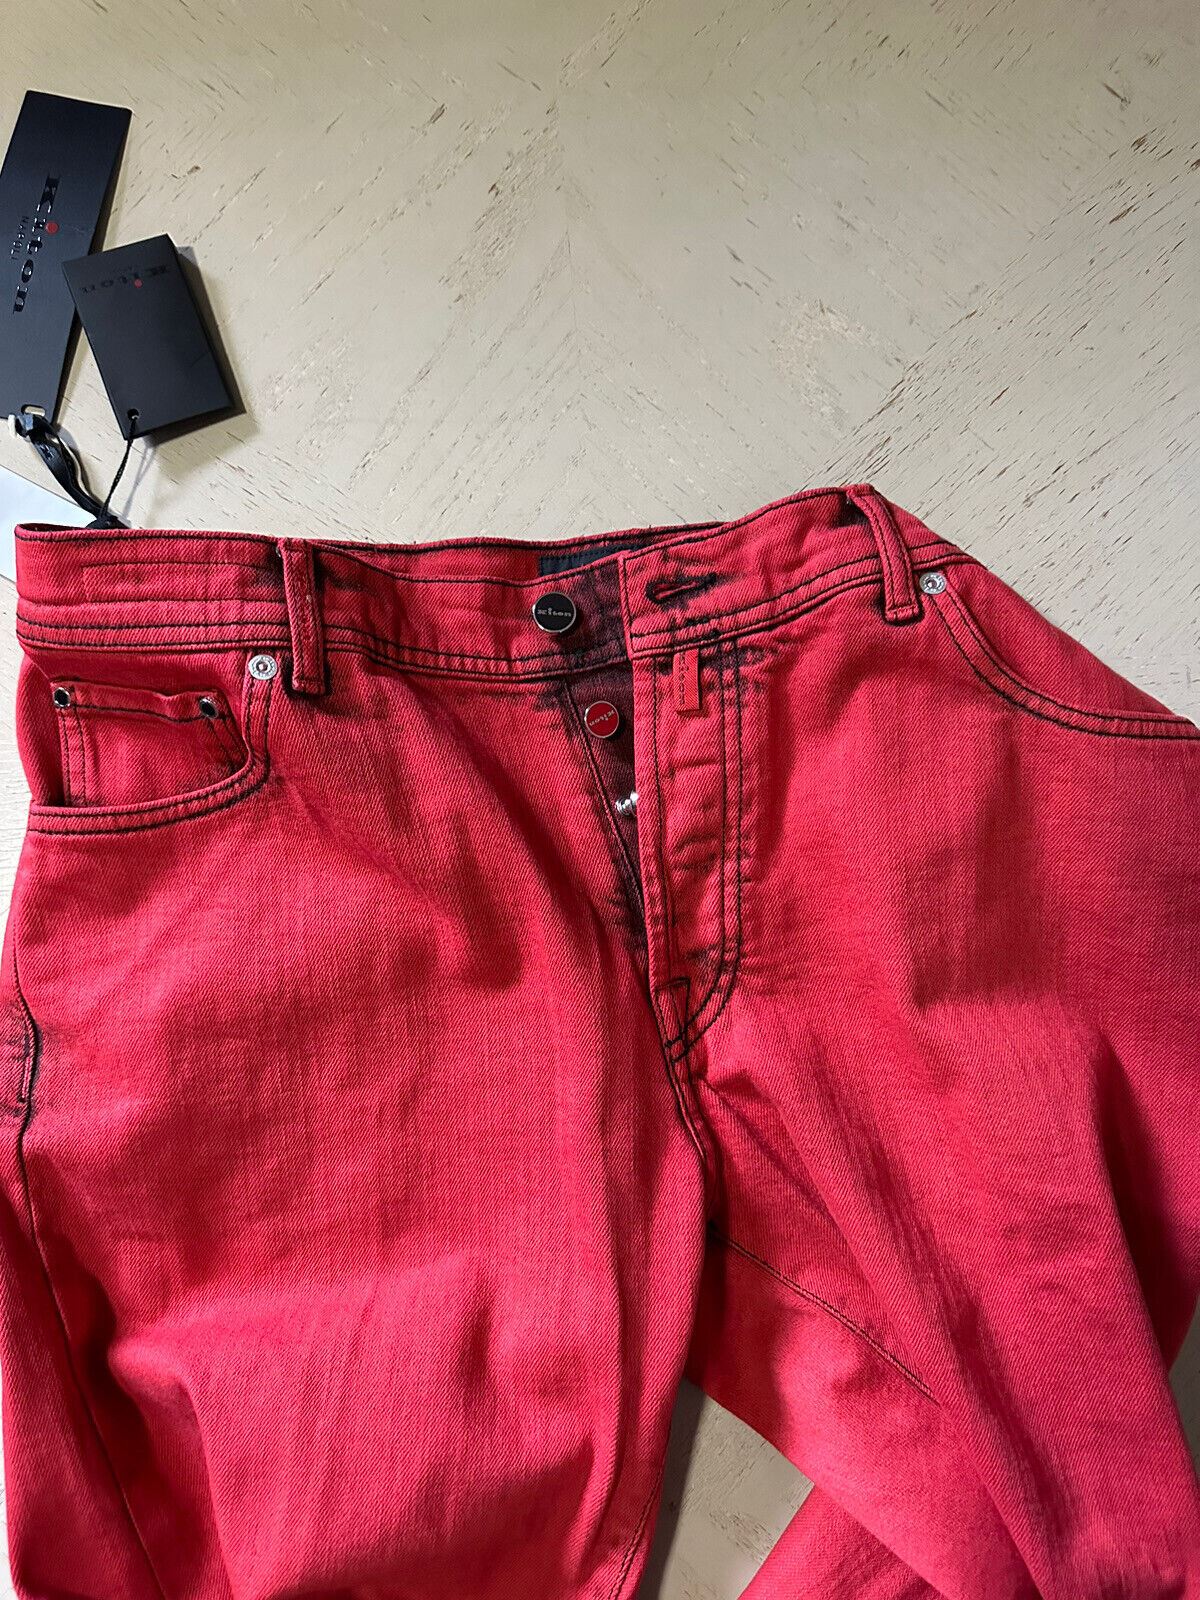 Neu mit Etikett: 1895 $ Kiton Herren-Jeans mit geradem Bein und schmaler Passform, Rot, 38 US (gemessen 36)